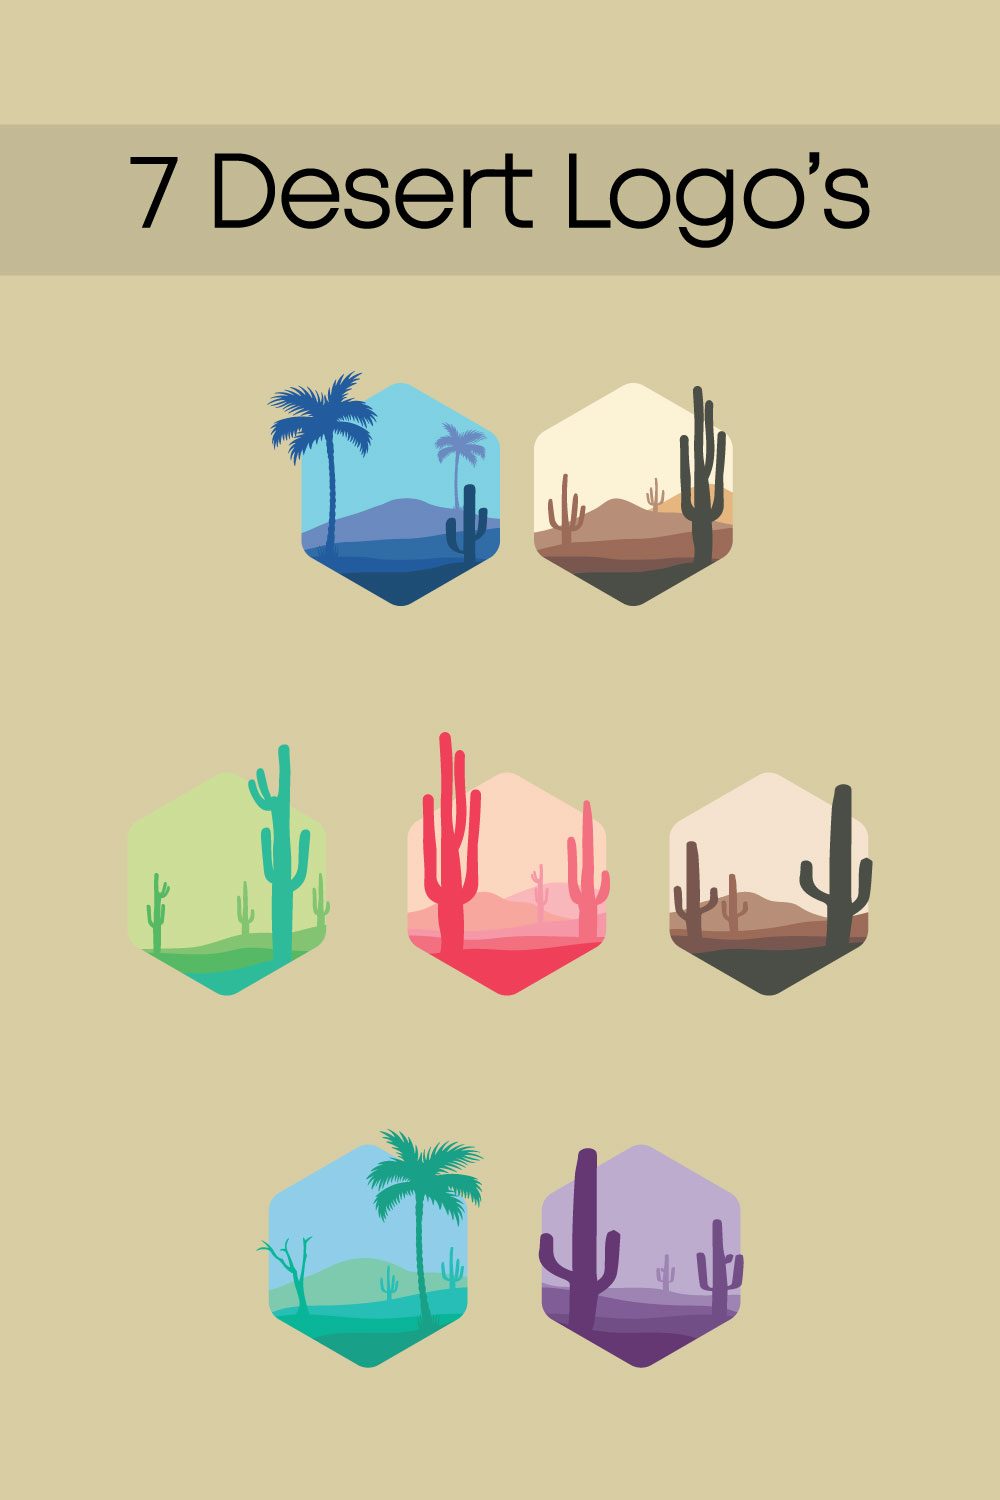 7 Desert Logo's pinterest preview image.